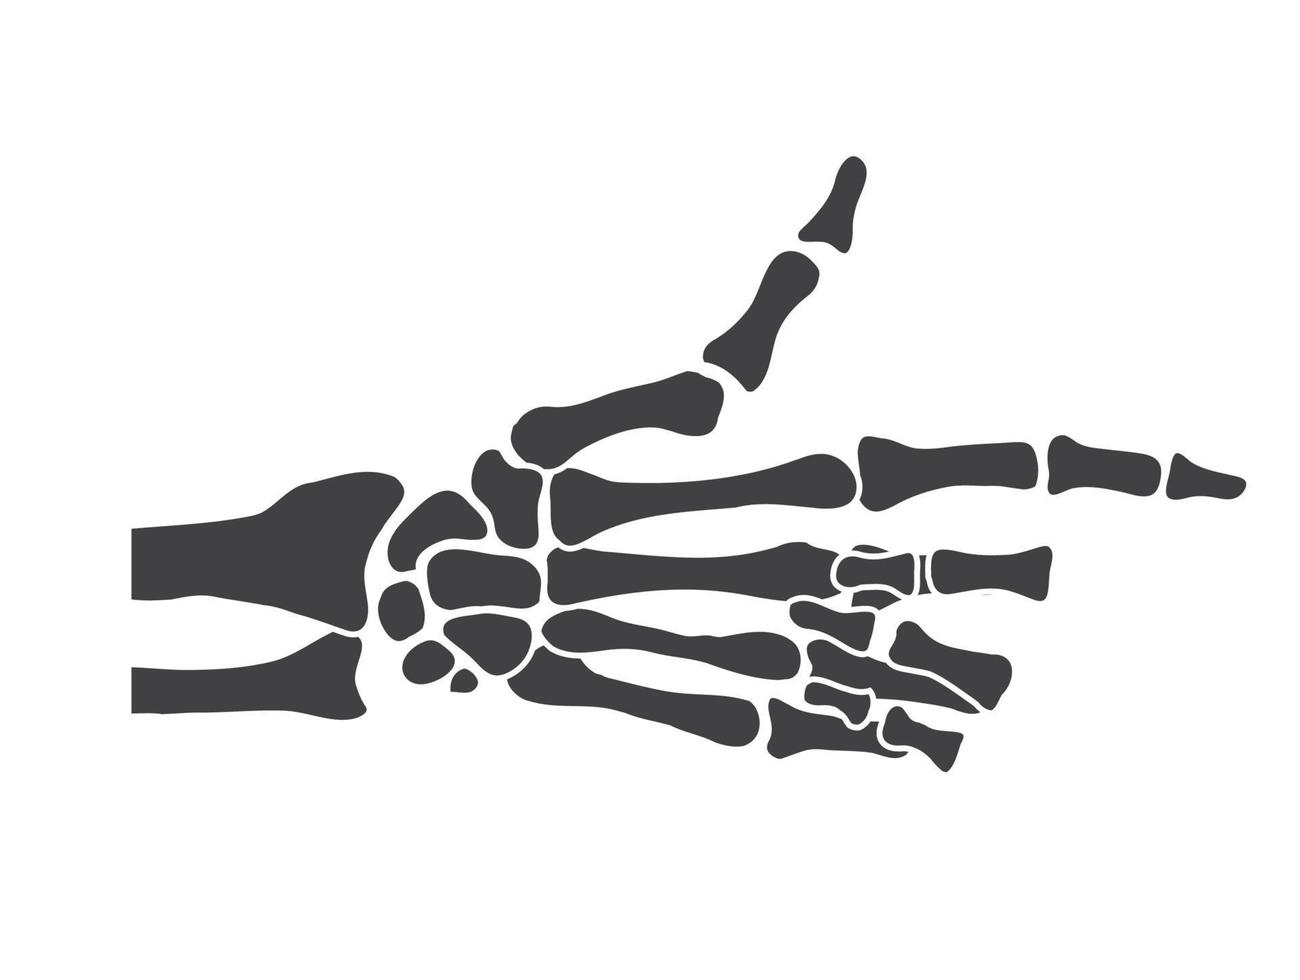 os de la main noir et blanc squelette humain os mains vecteur